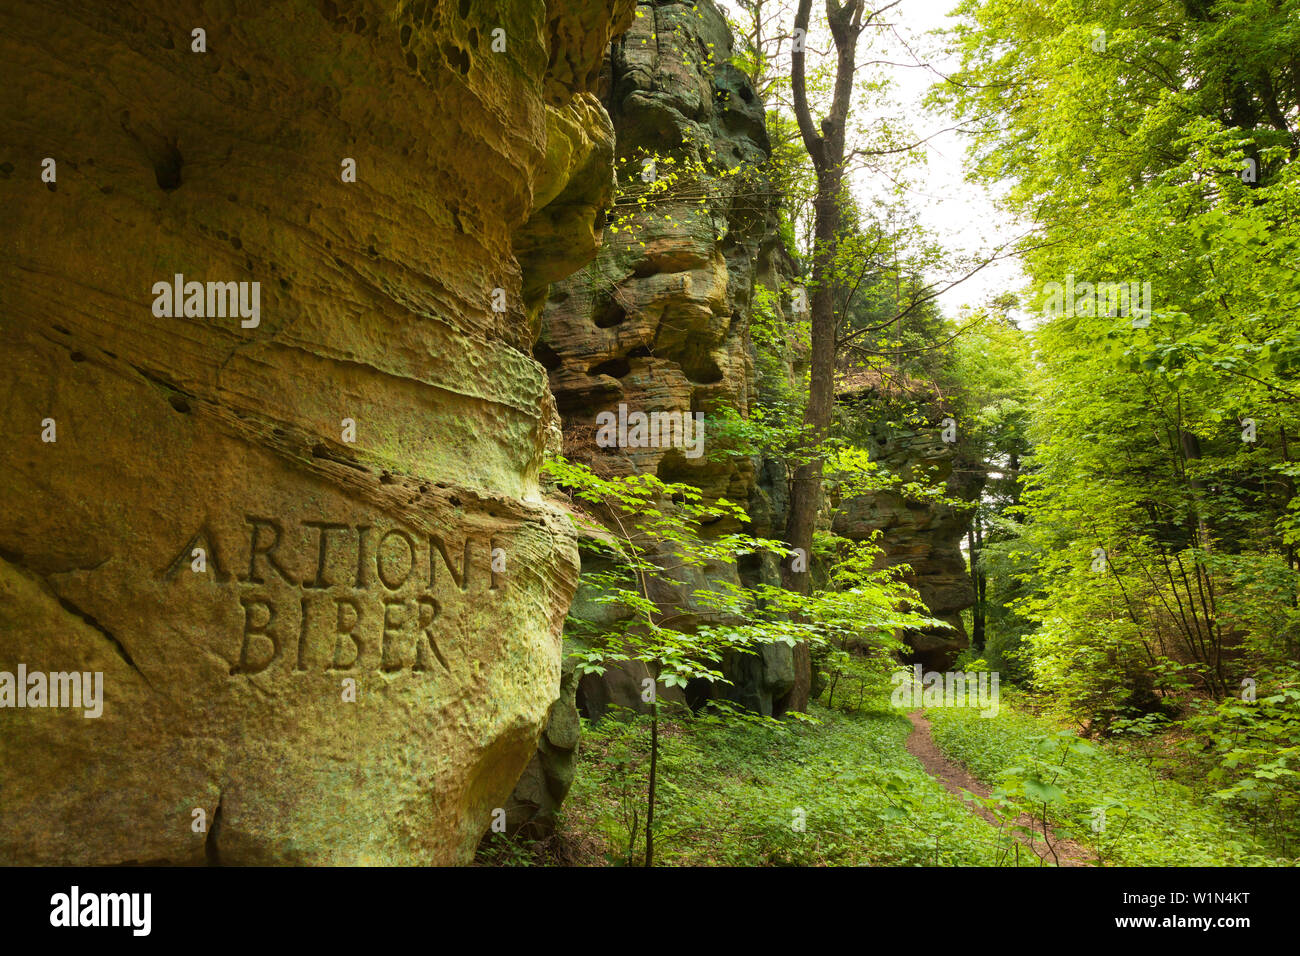 Rock formation, Schweinestaelle, near Bollendorf, nature park Suedeifel, Eifel, Rhineland-Palatinate, Germany Stock Photo